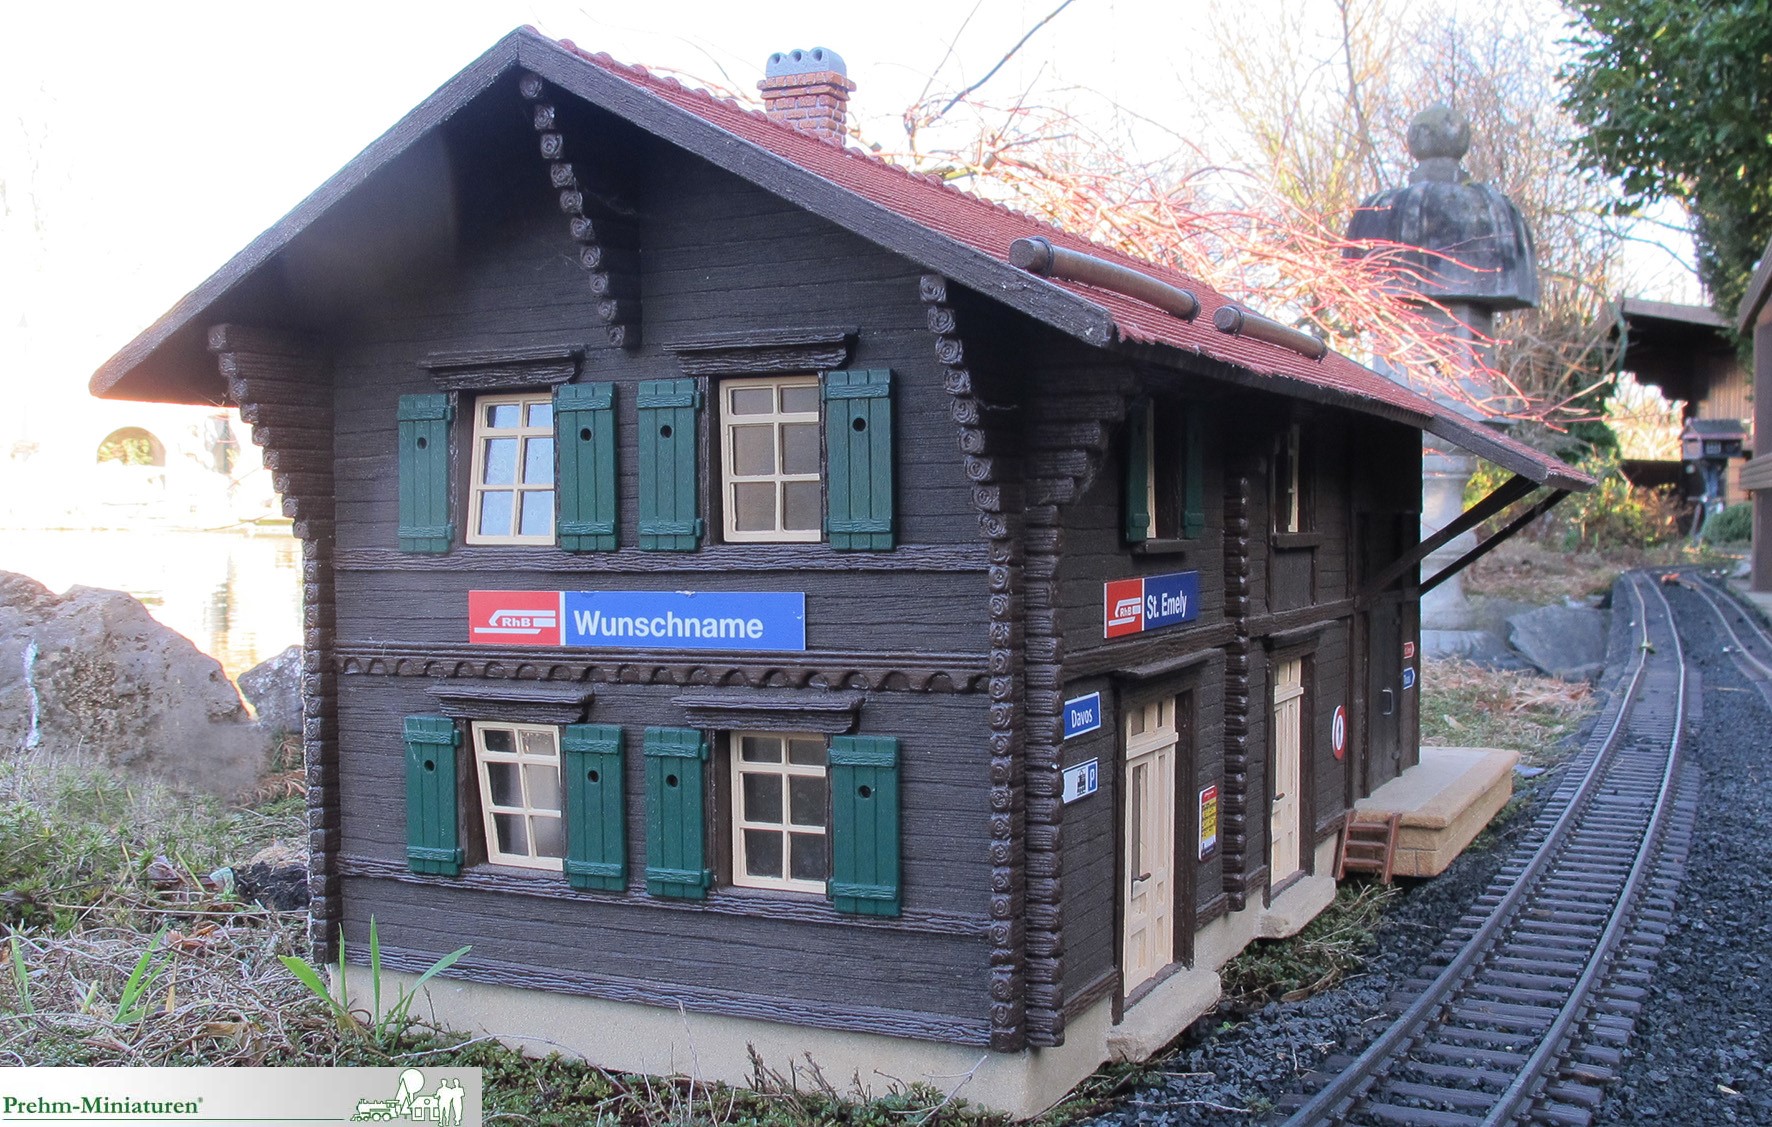 RhB Bahnhof "Wiesen" neues Modell von Prehm Miniaturen. Das Besondere am Bahnhof St. Emely ist der Wunschname. Bei einer Bestellung werden Wnsche bercksichtigt, so dass der Wunschname gleich mitgeliefert wird und das kostenlos.